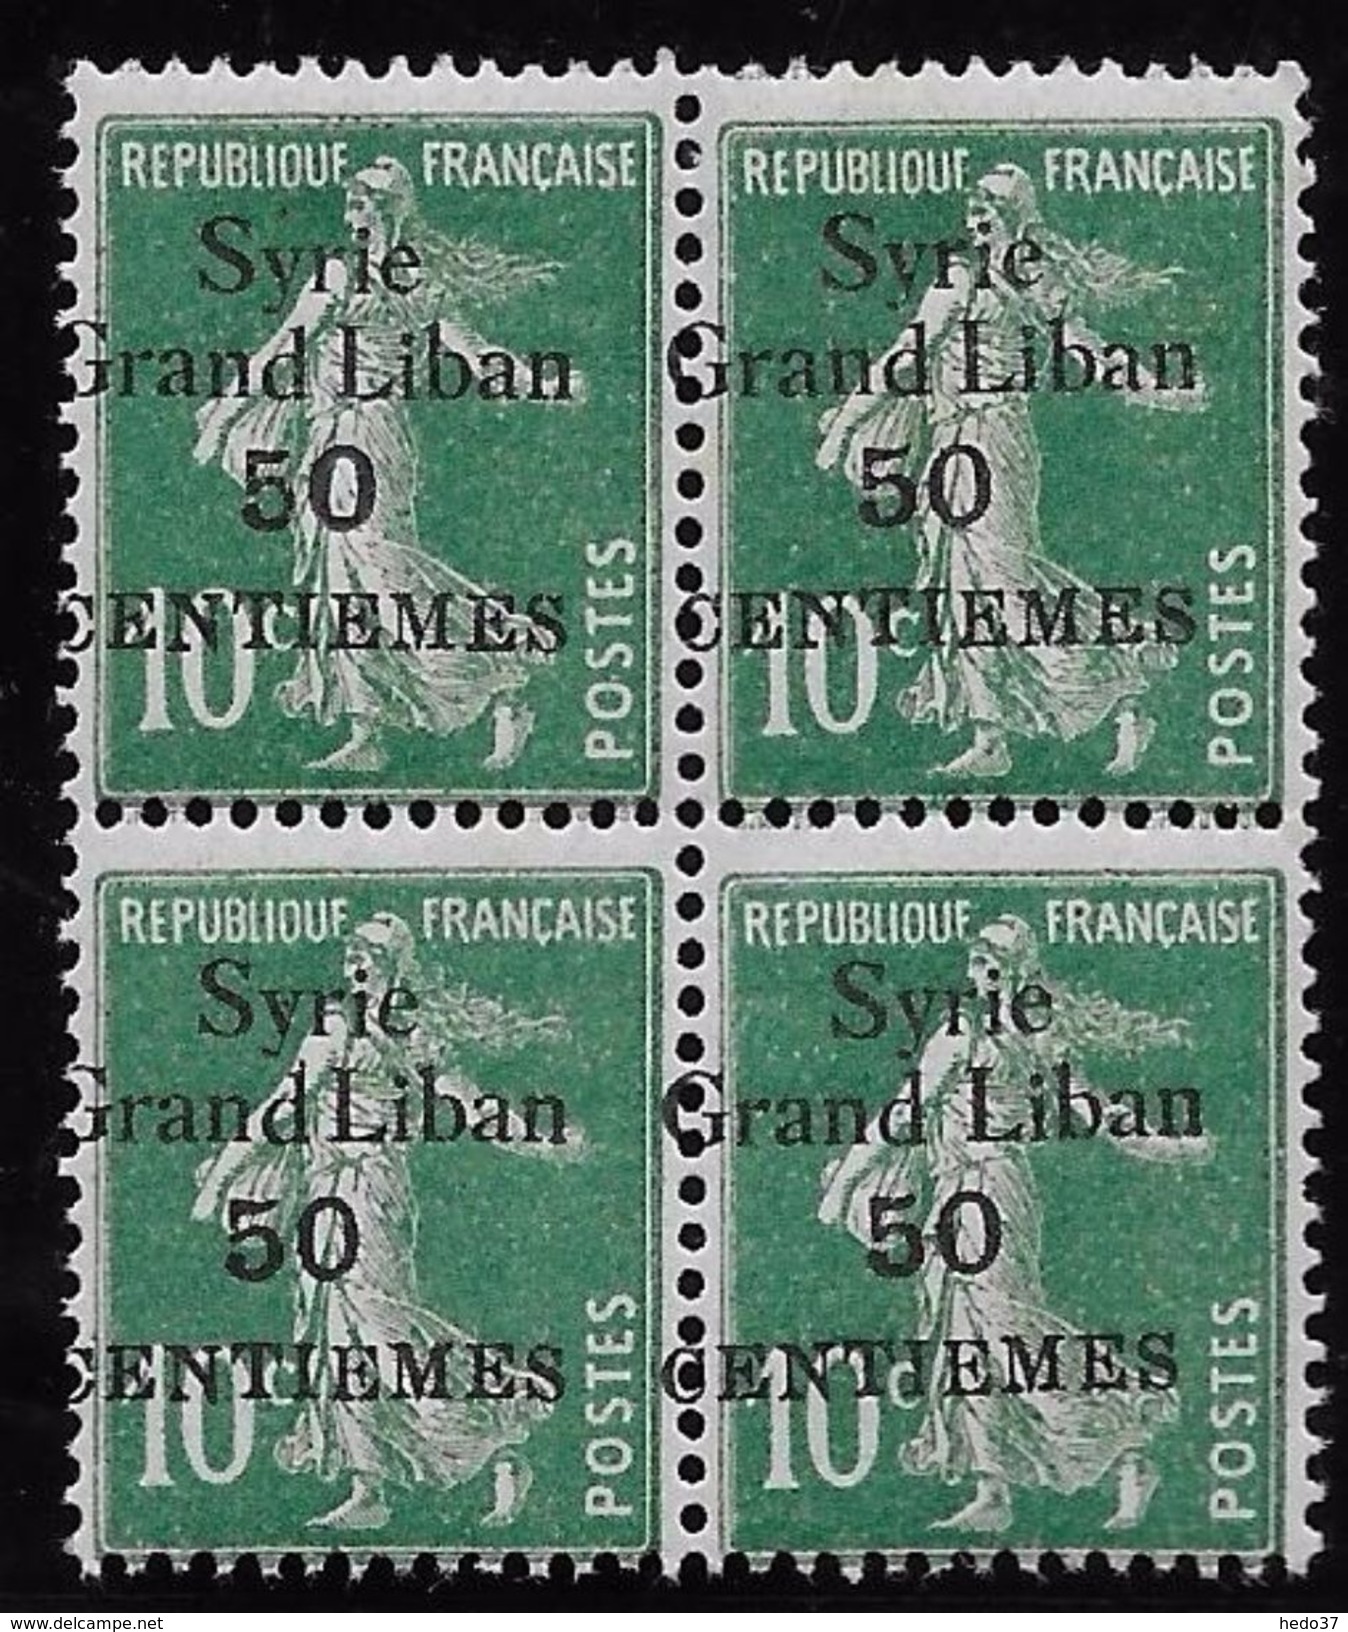 Syrie N°90 - Bloc De 4 - Variété Surcharge Légèrement à Cheval - Neuf ** Sans Charnière - TB - Unused Stamps